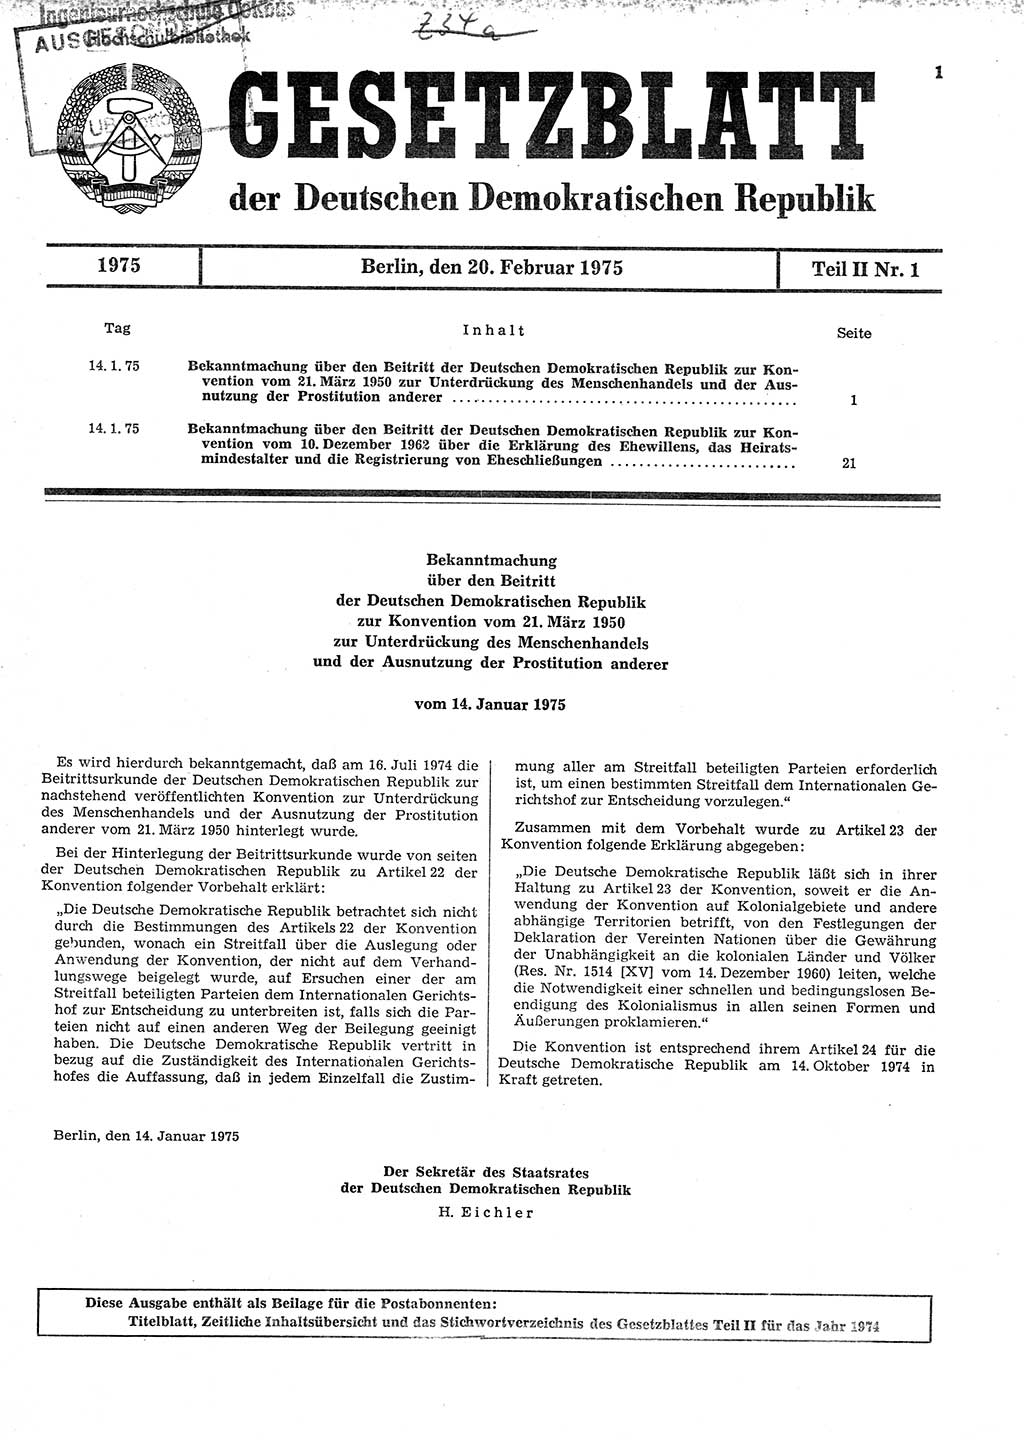 Gesetzblatt (GBl.) der Deutschen Demokratischen Republik (DDR) Teil ⅠⅠ 1975, Seite 1 (GBl. DDR ⅠⅠ 1975, S. 1)